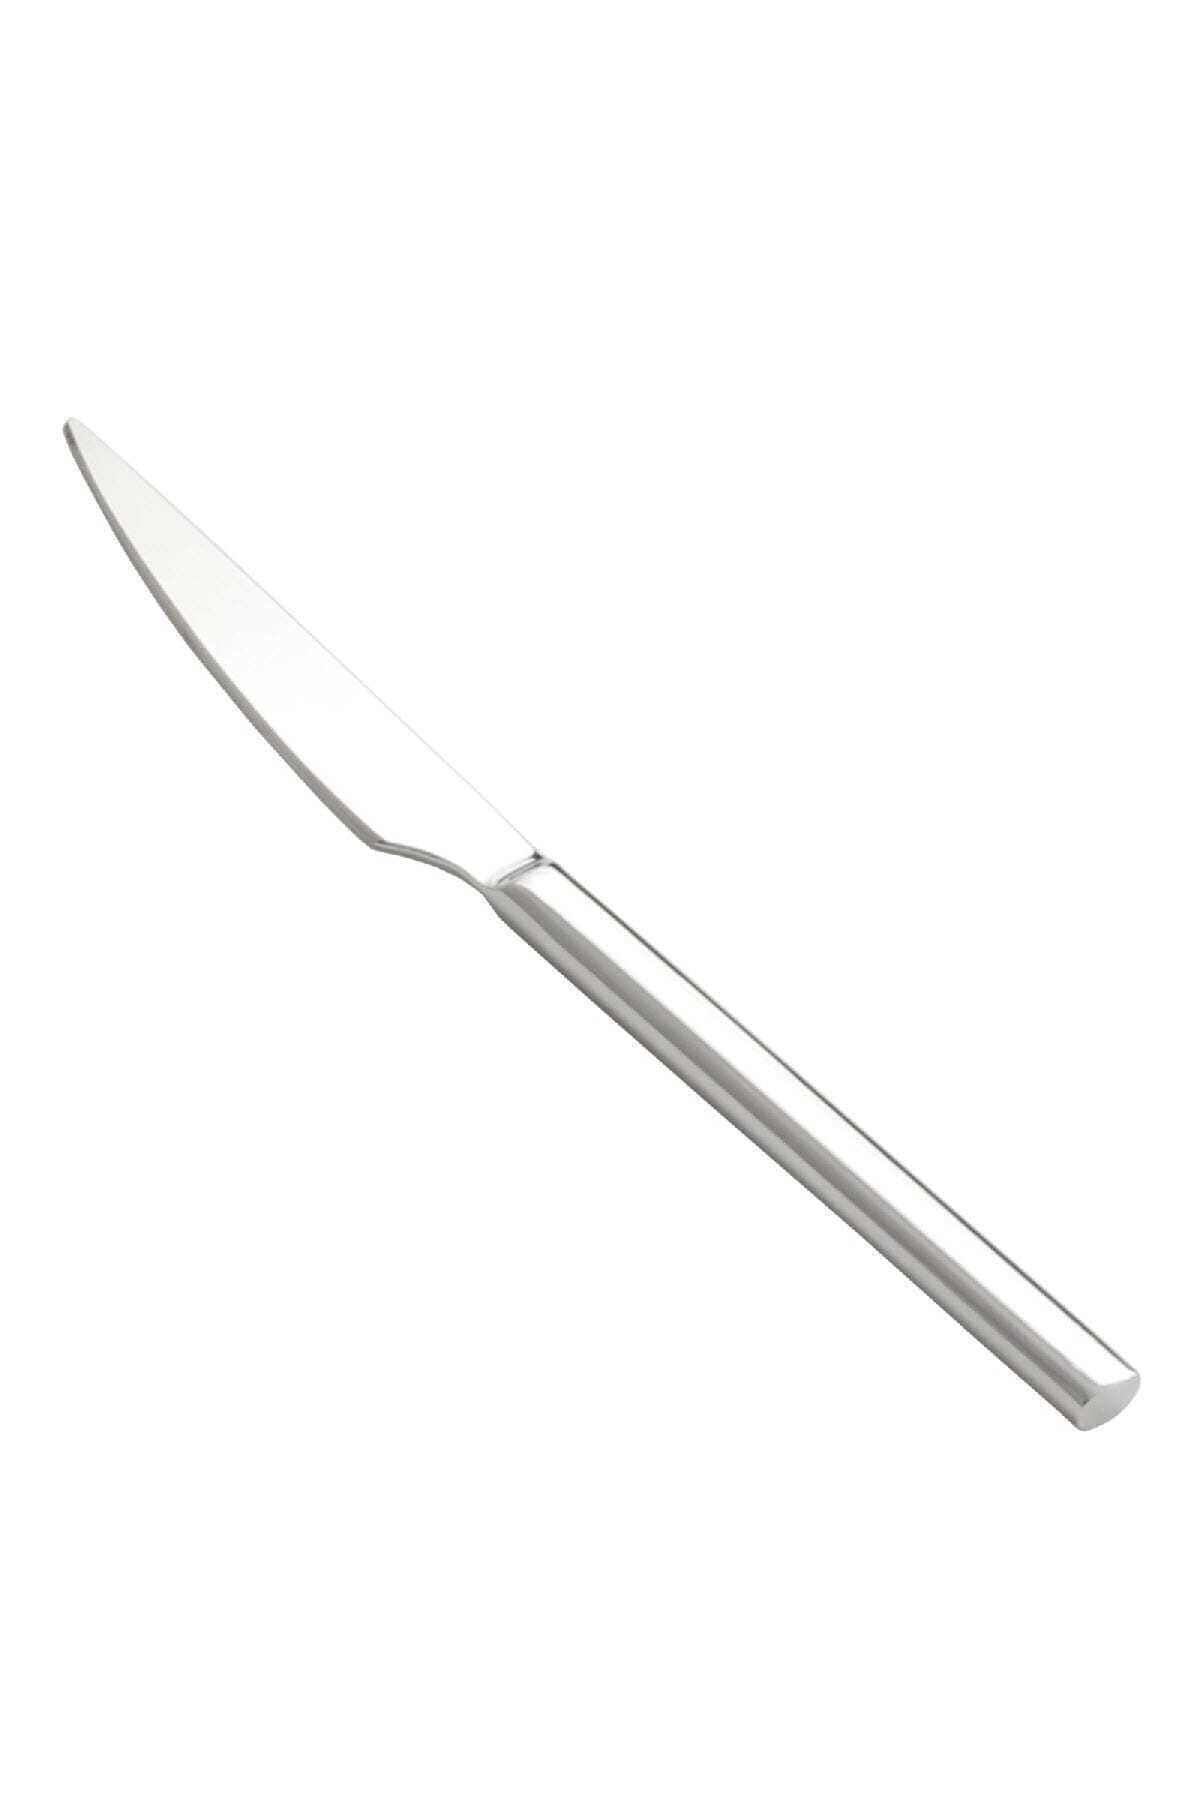 Hira Yemek bıçağı hira çubuk 12 adet